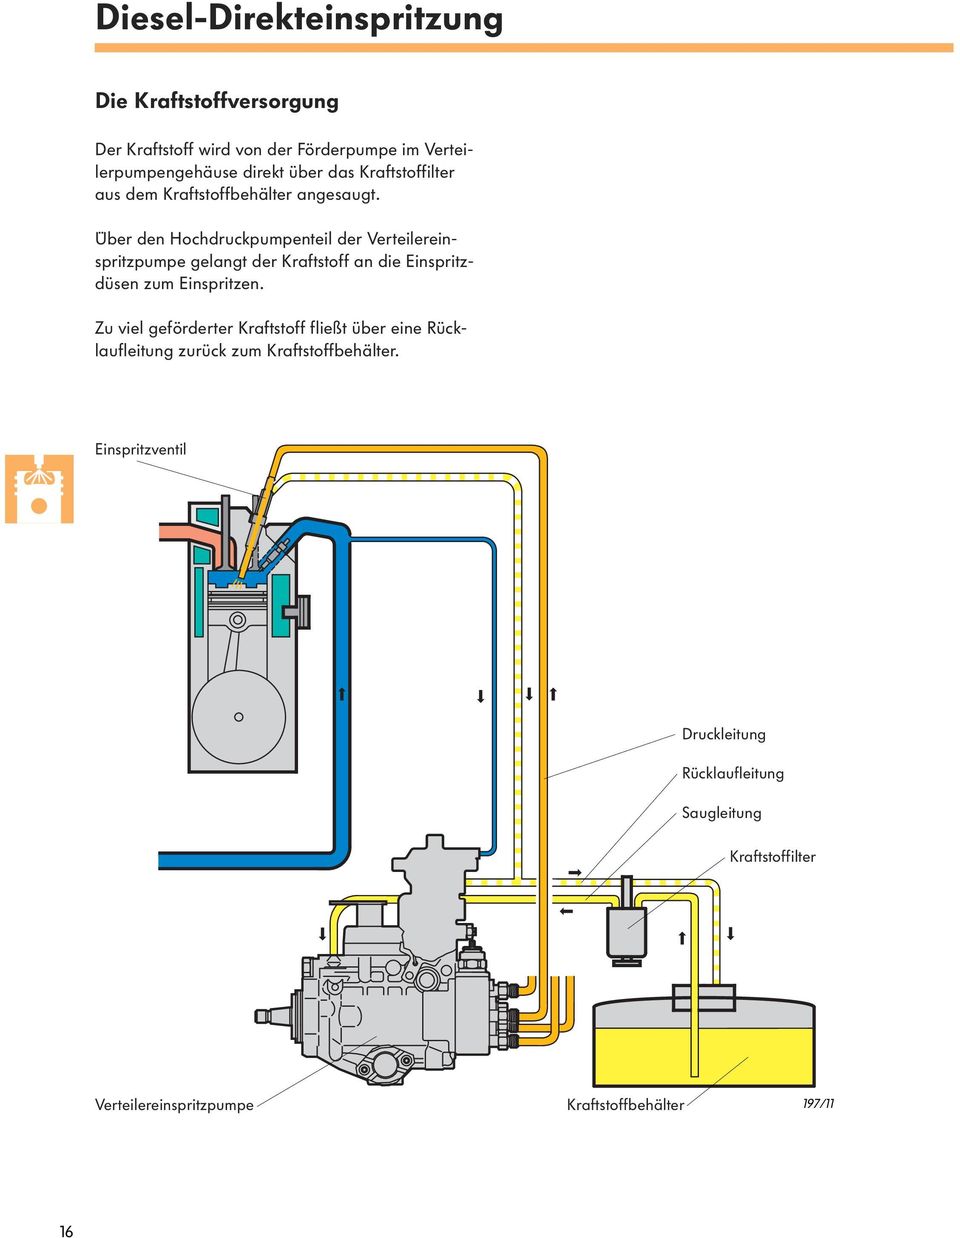 Über den Hochdruckpumpenteil der Verteilereinspritzpumpe gelangt der Kraftstoff an die Einspritzdüsen zum Einspritzen.